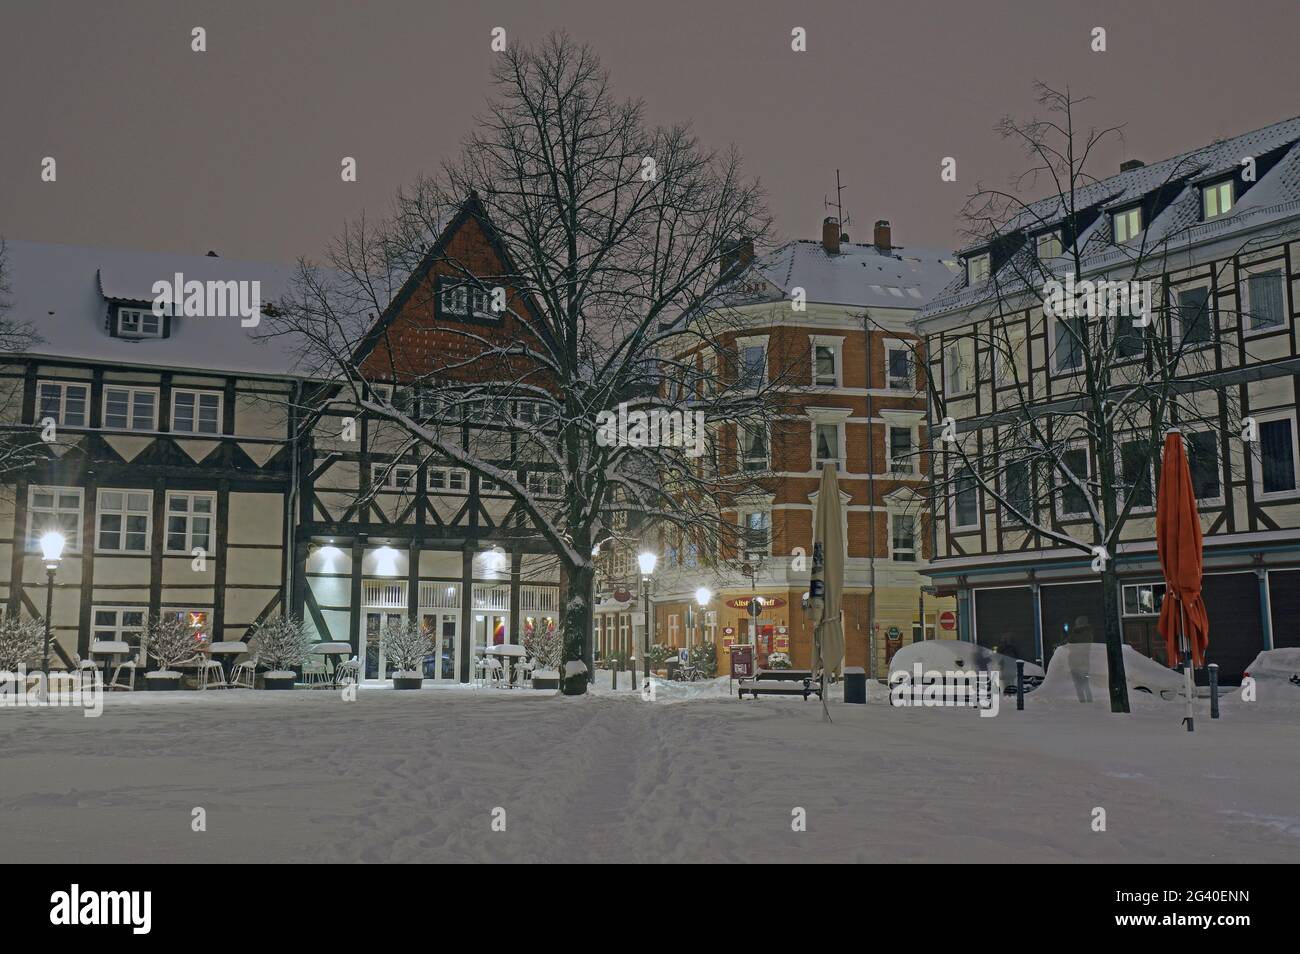 Brunswiek in winter Stock Photo